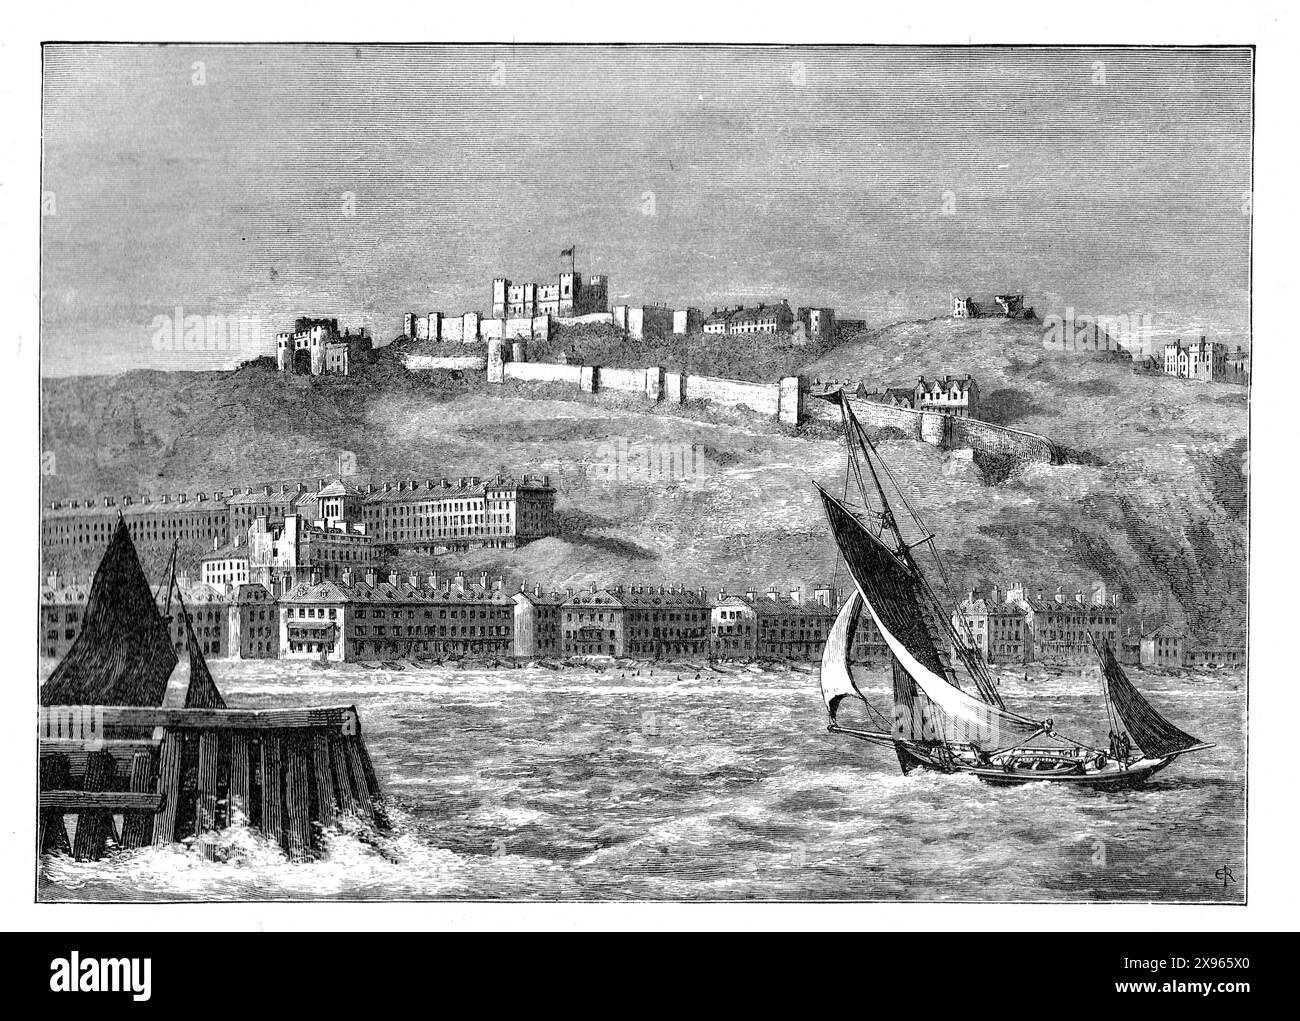 Dover, Kent, Inghilterra sud-orientale, vista dal mare alla fine del XIX secolo. Da "Our Own Country". Pubblicato nel 1898 Foto Stock